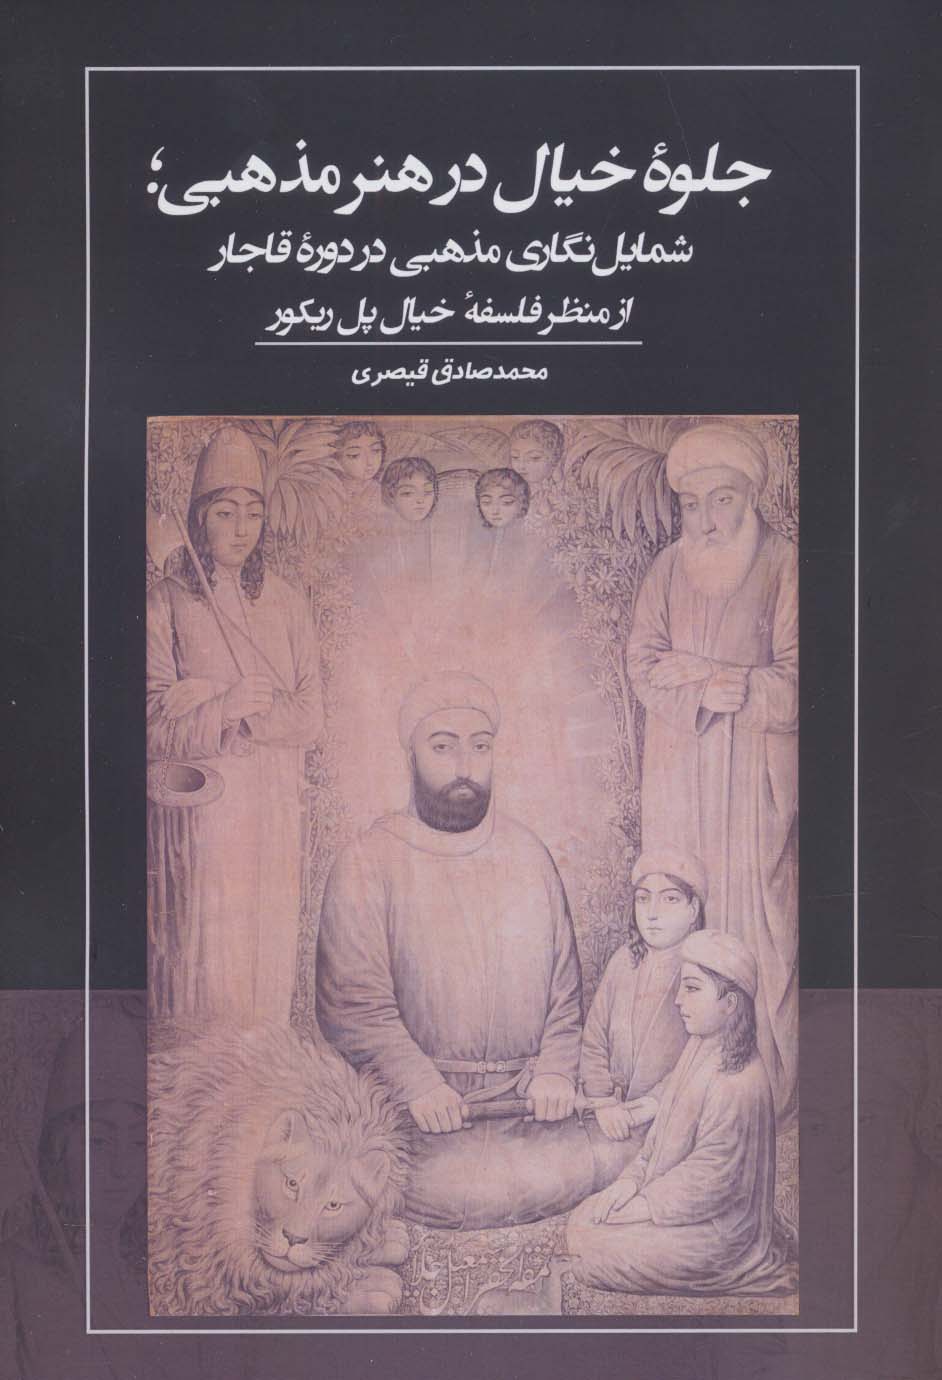 جلوه خیال در هنر مذهبی؛ شمایل نگاری مذهبی در دوره قاجار